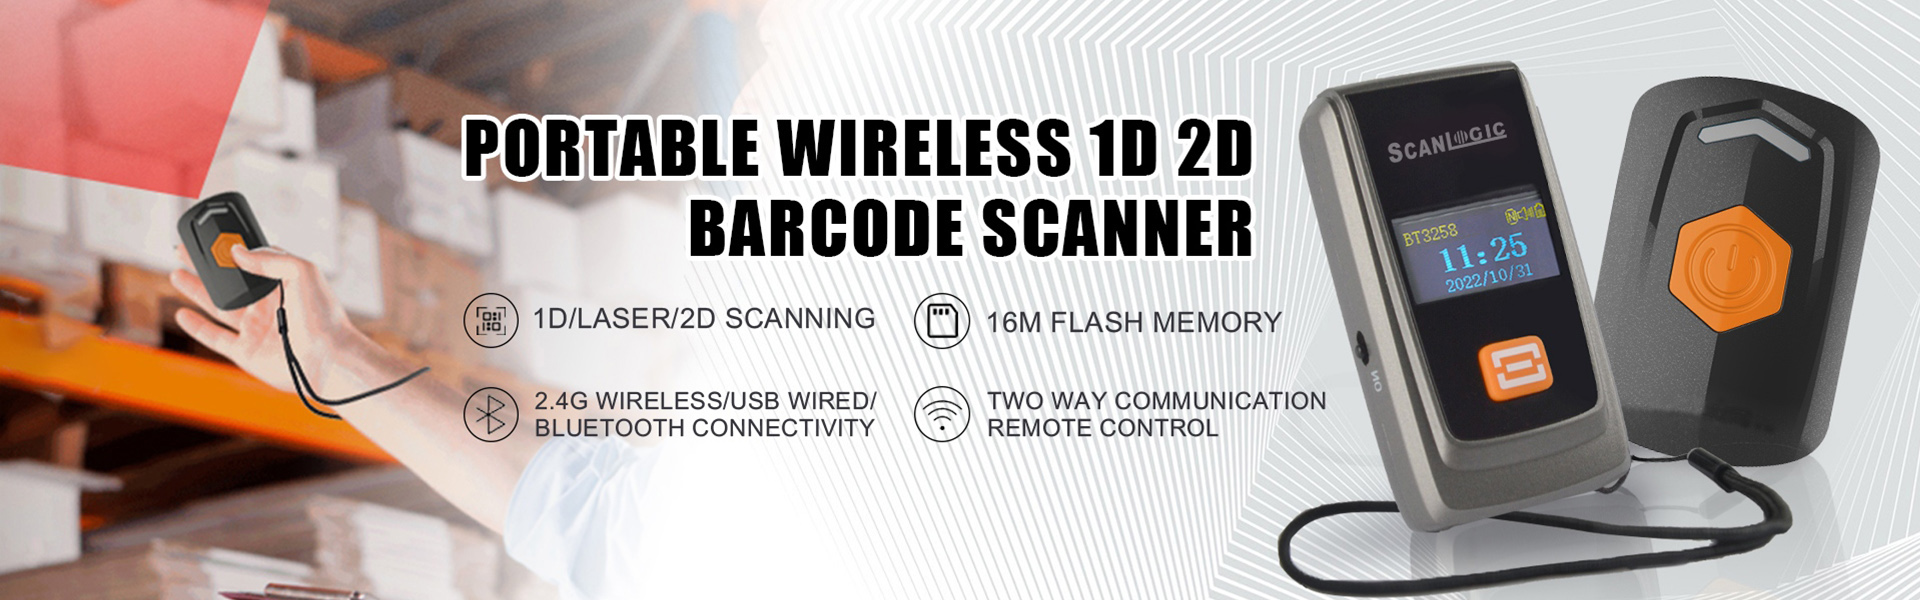 Portable Wireless 1D 2D Barcode Scanner